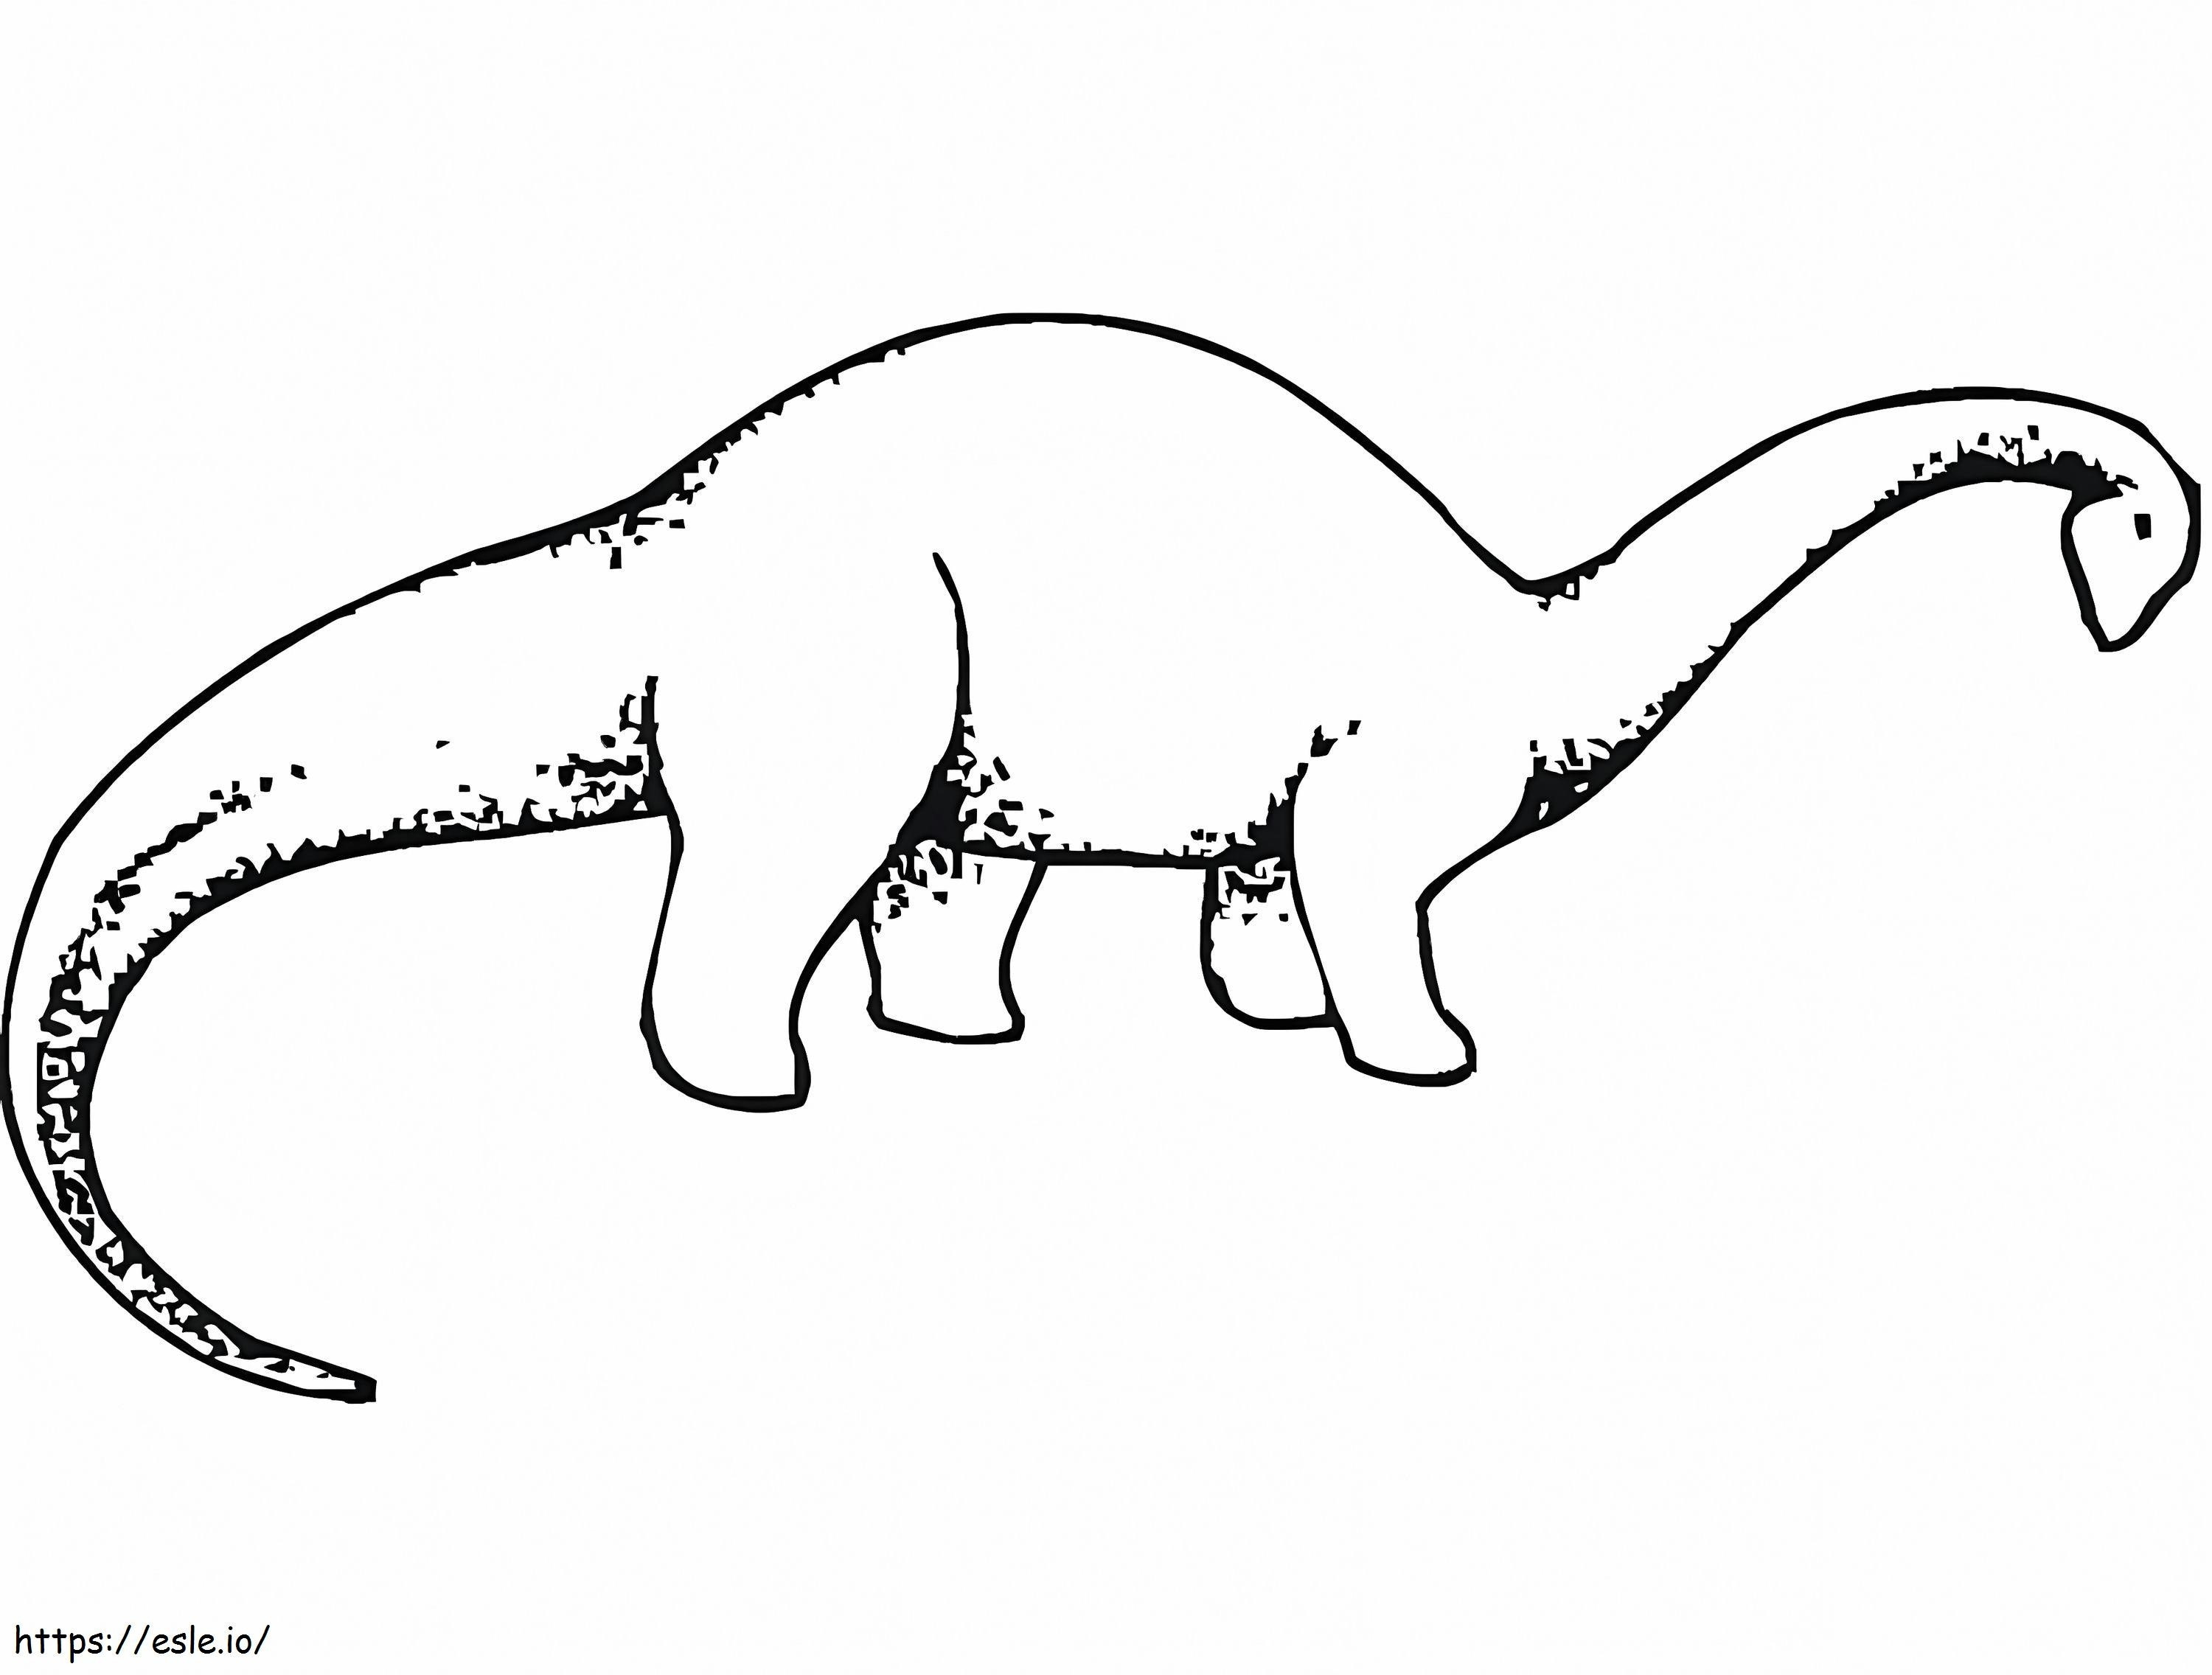 Brachiosaurus 1 Gambar Mewarnai